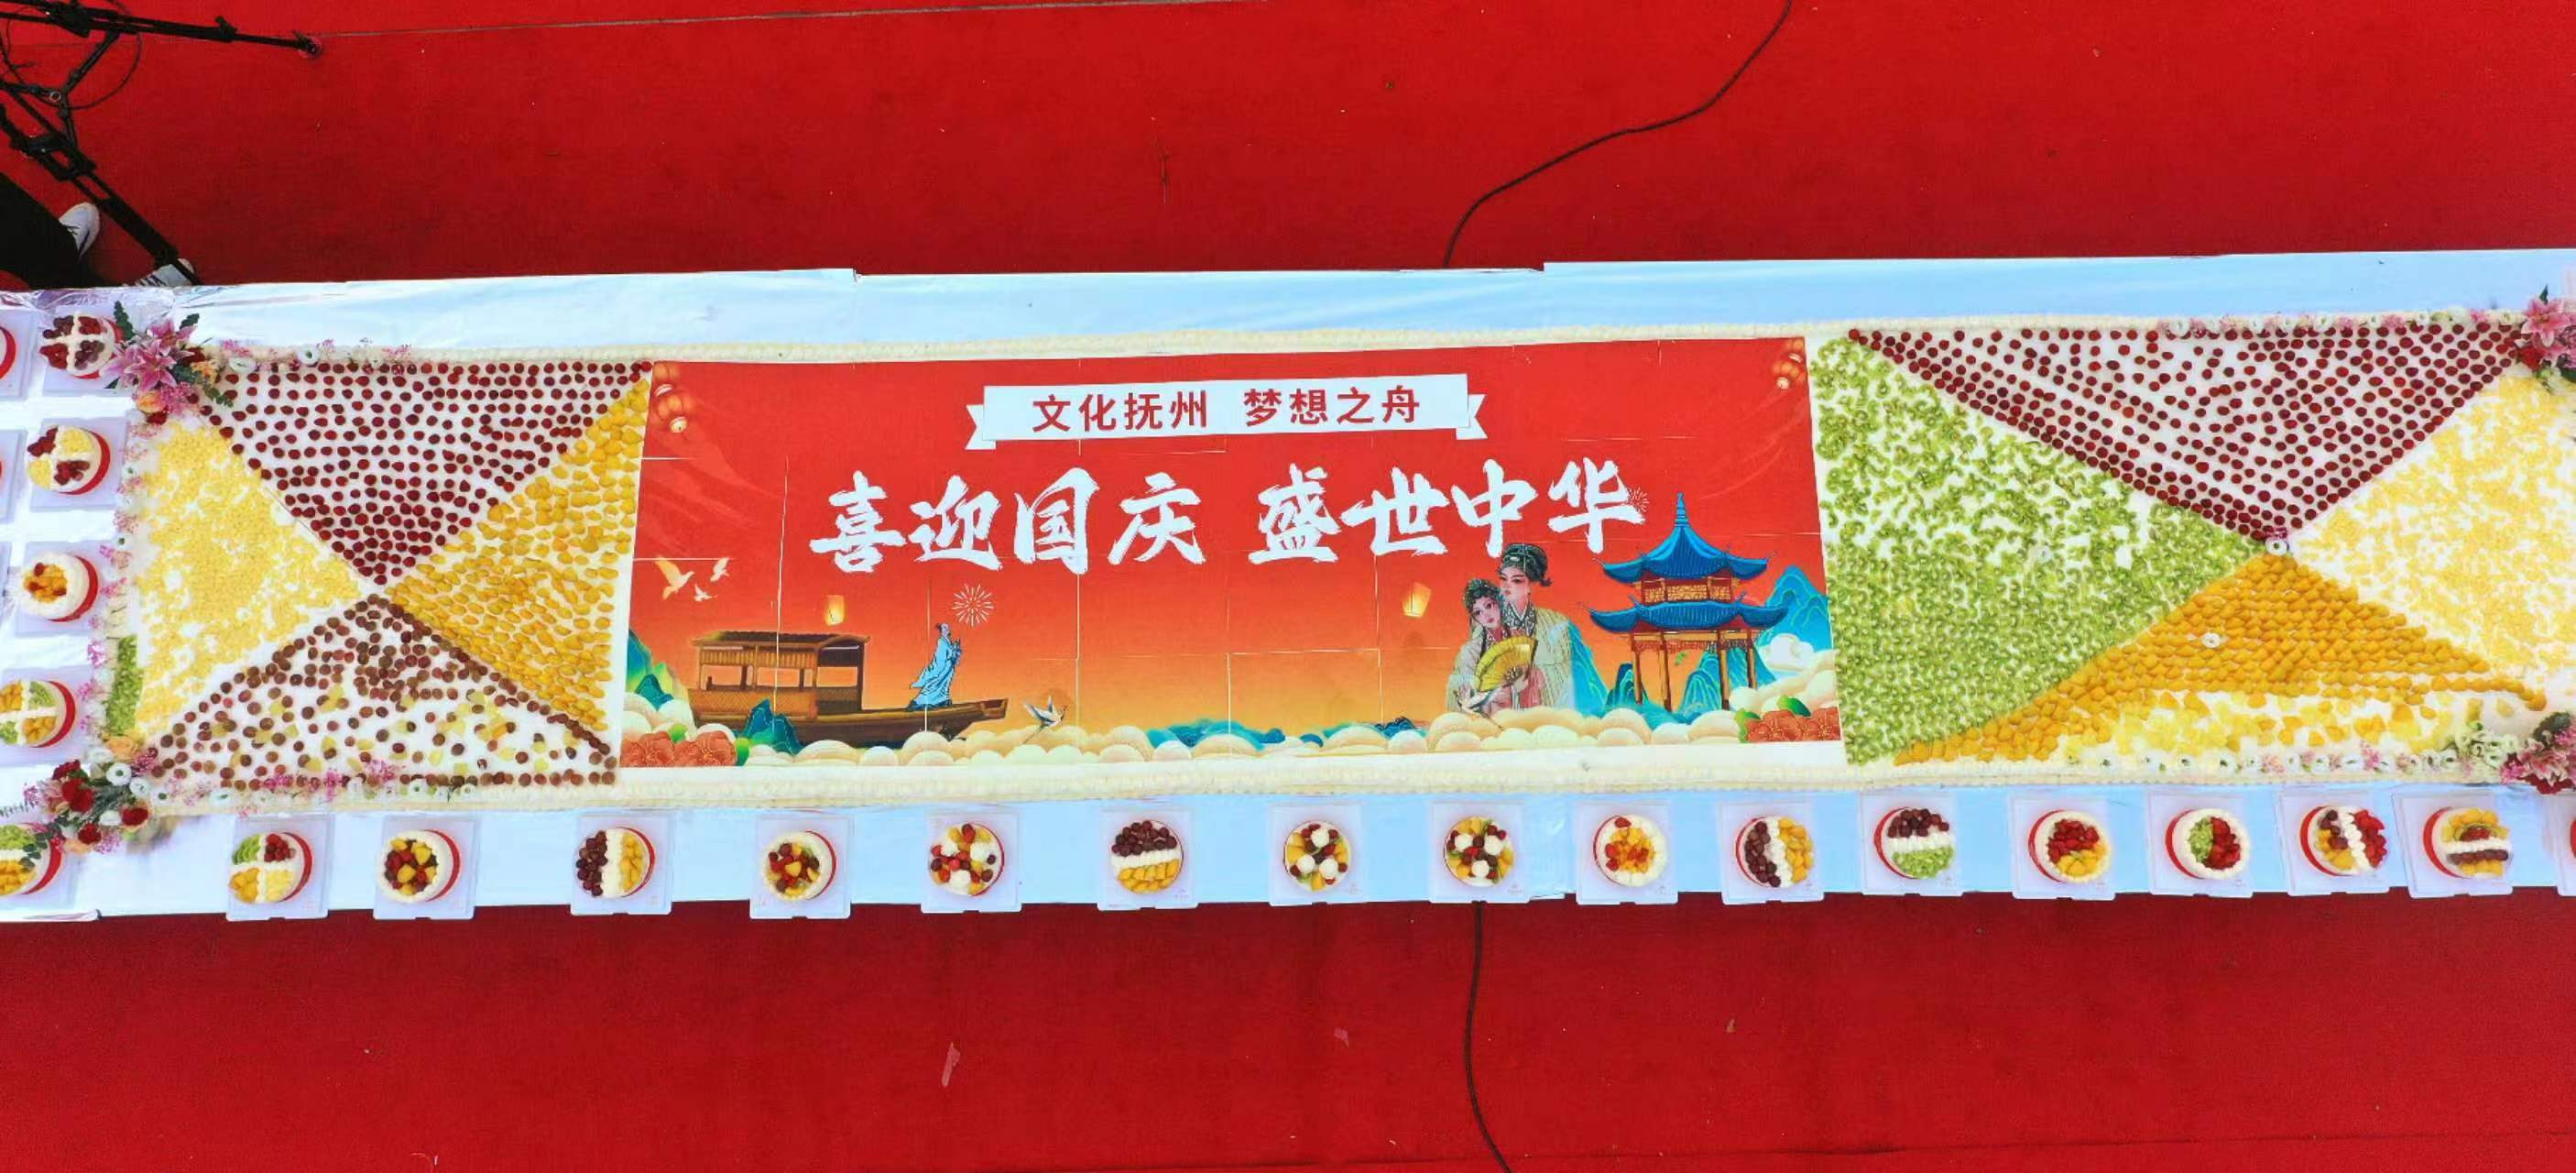  长加宽7.4米！巨型大蛋糕亮相抚州文昌里，为祖国庆生！ 